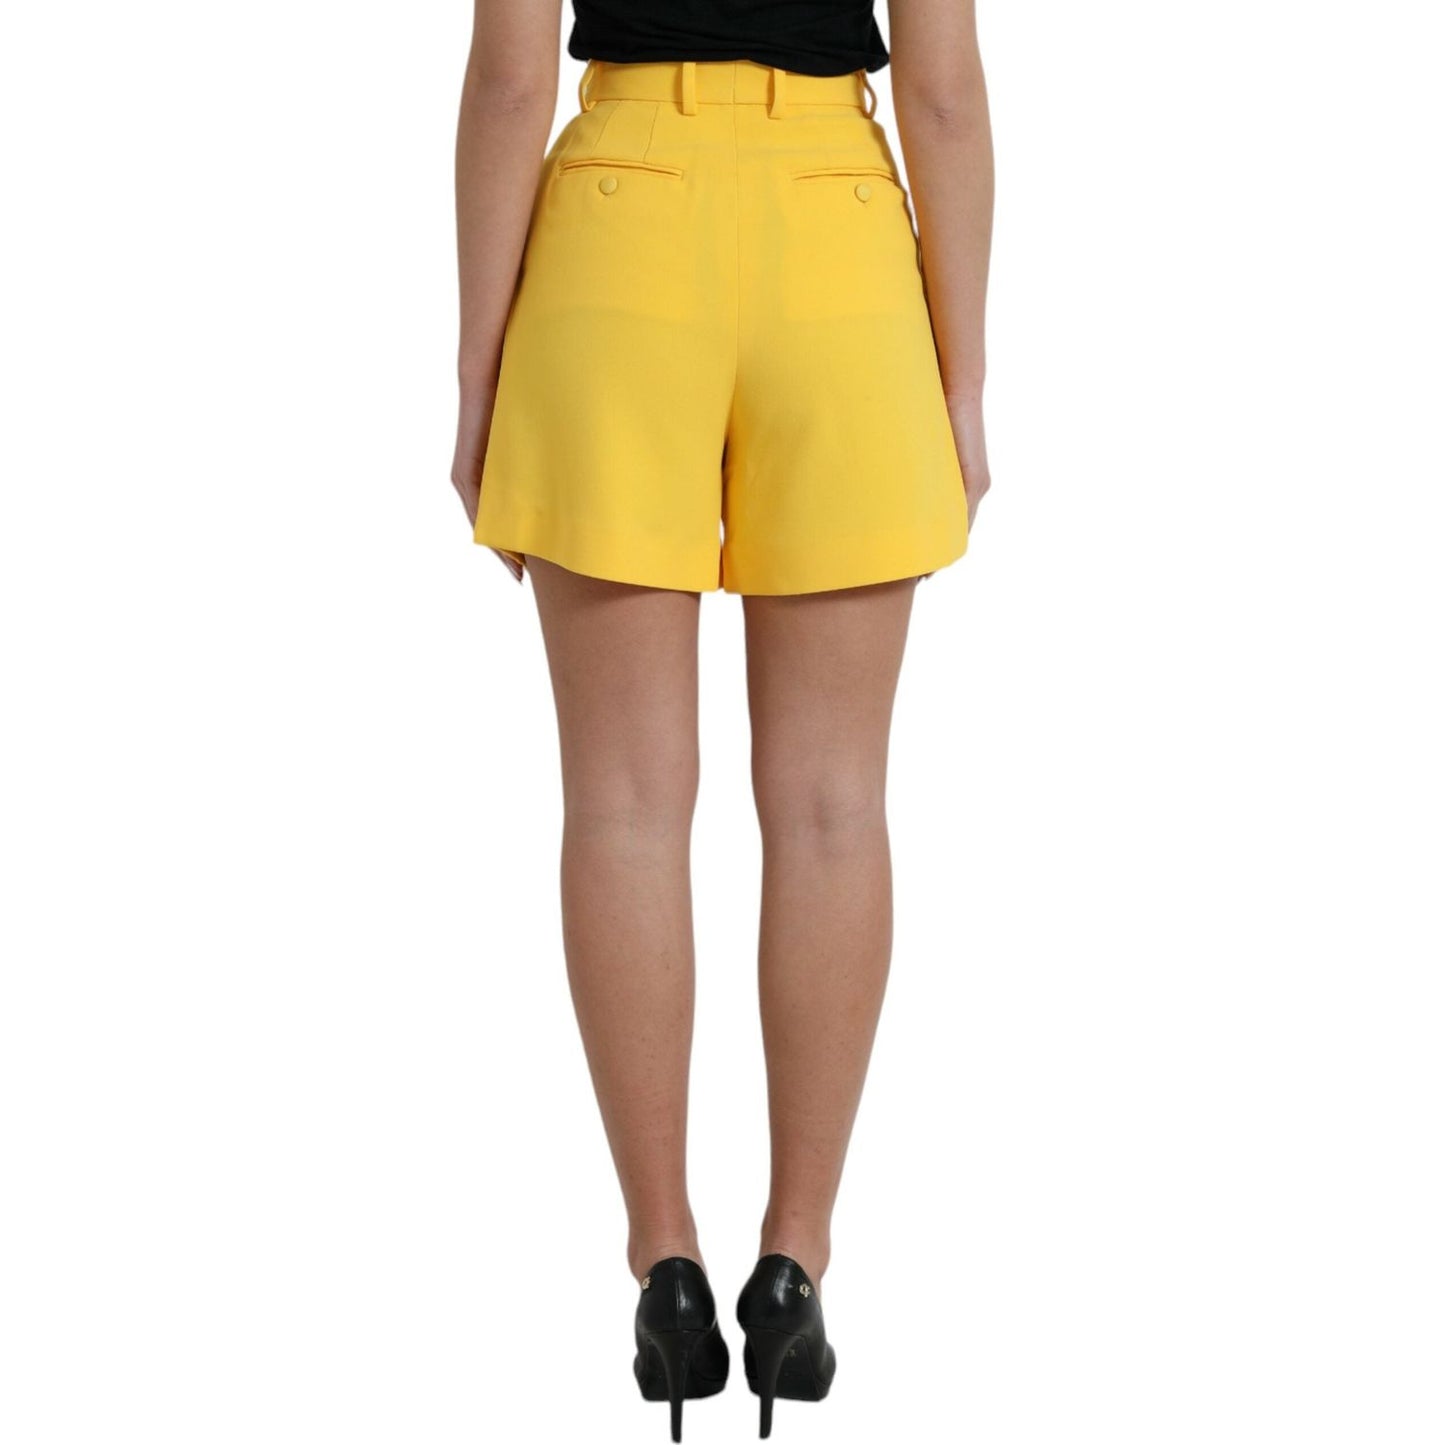 Dolce & Gabbana | High Waist Bermuda Shorts in Sunshine Yellow| McRichard Designer Brands   